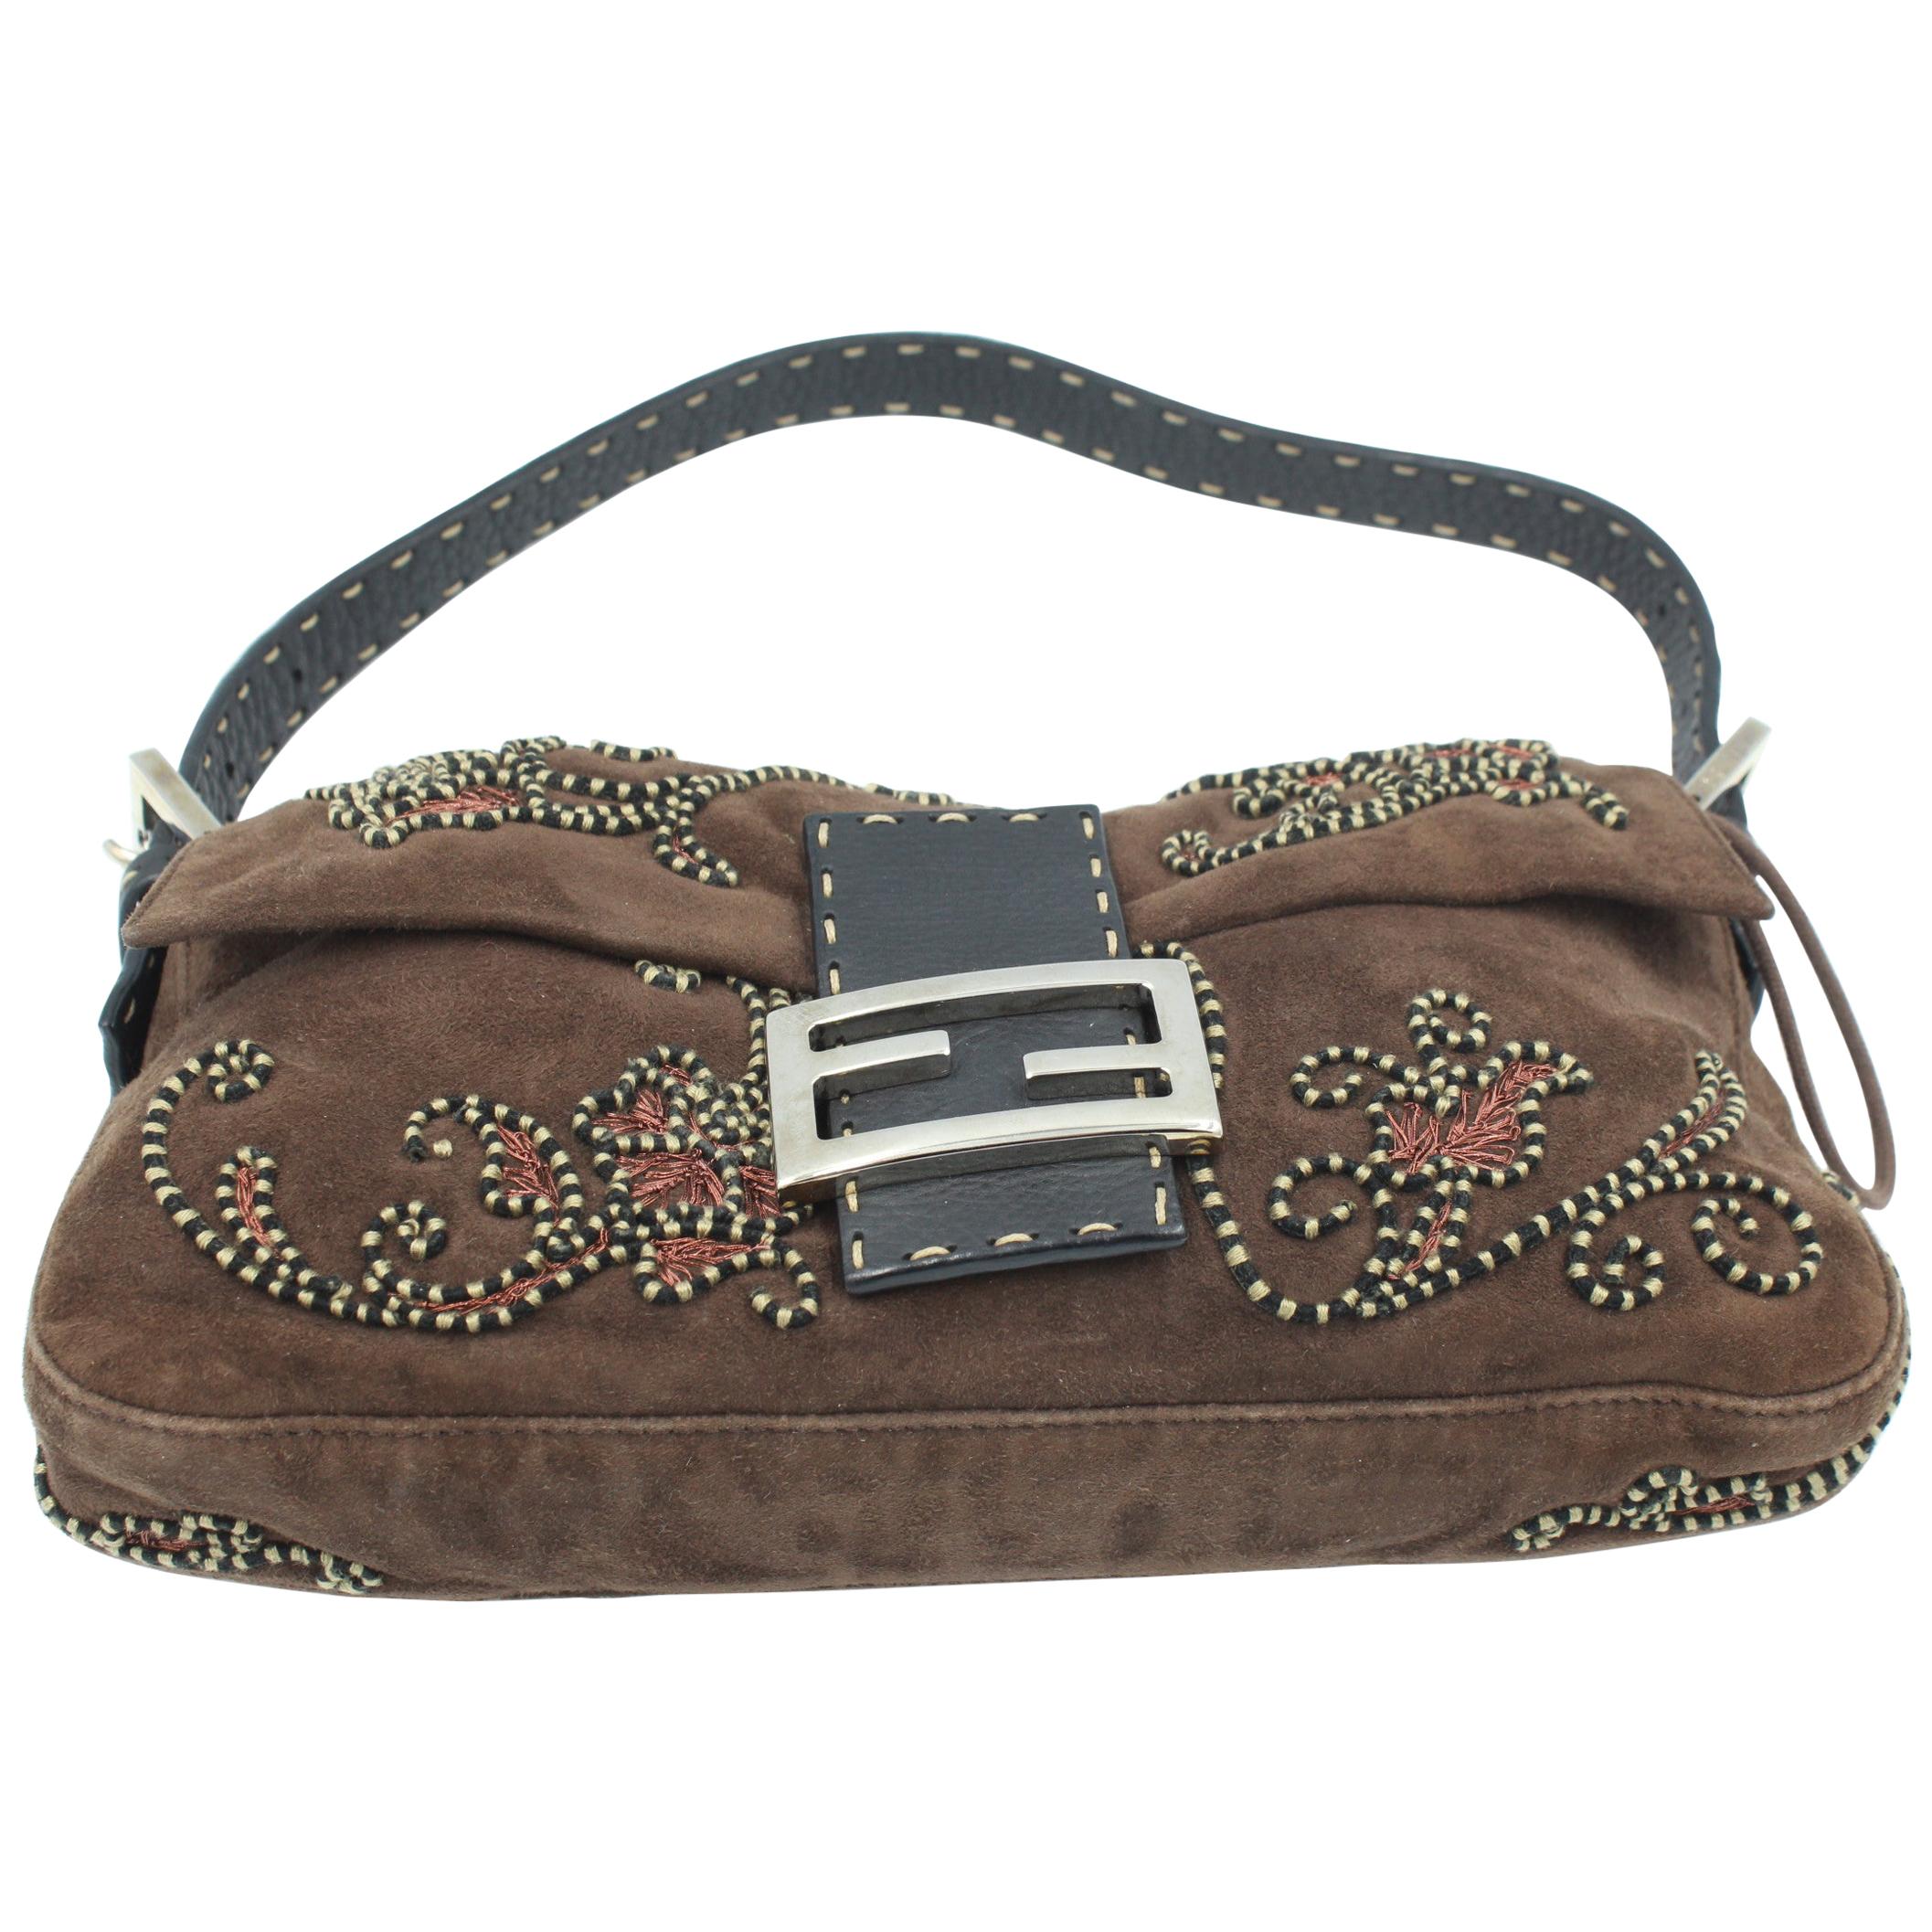 Fendi Baguette handbag in velvet and embroidery